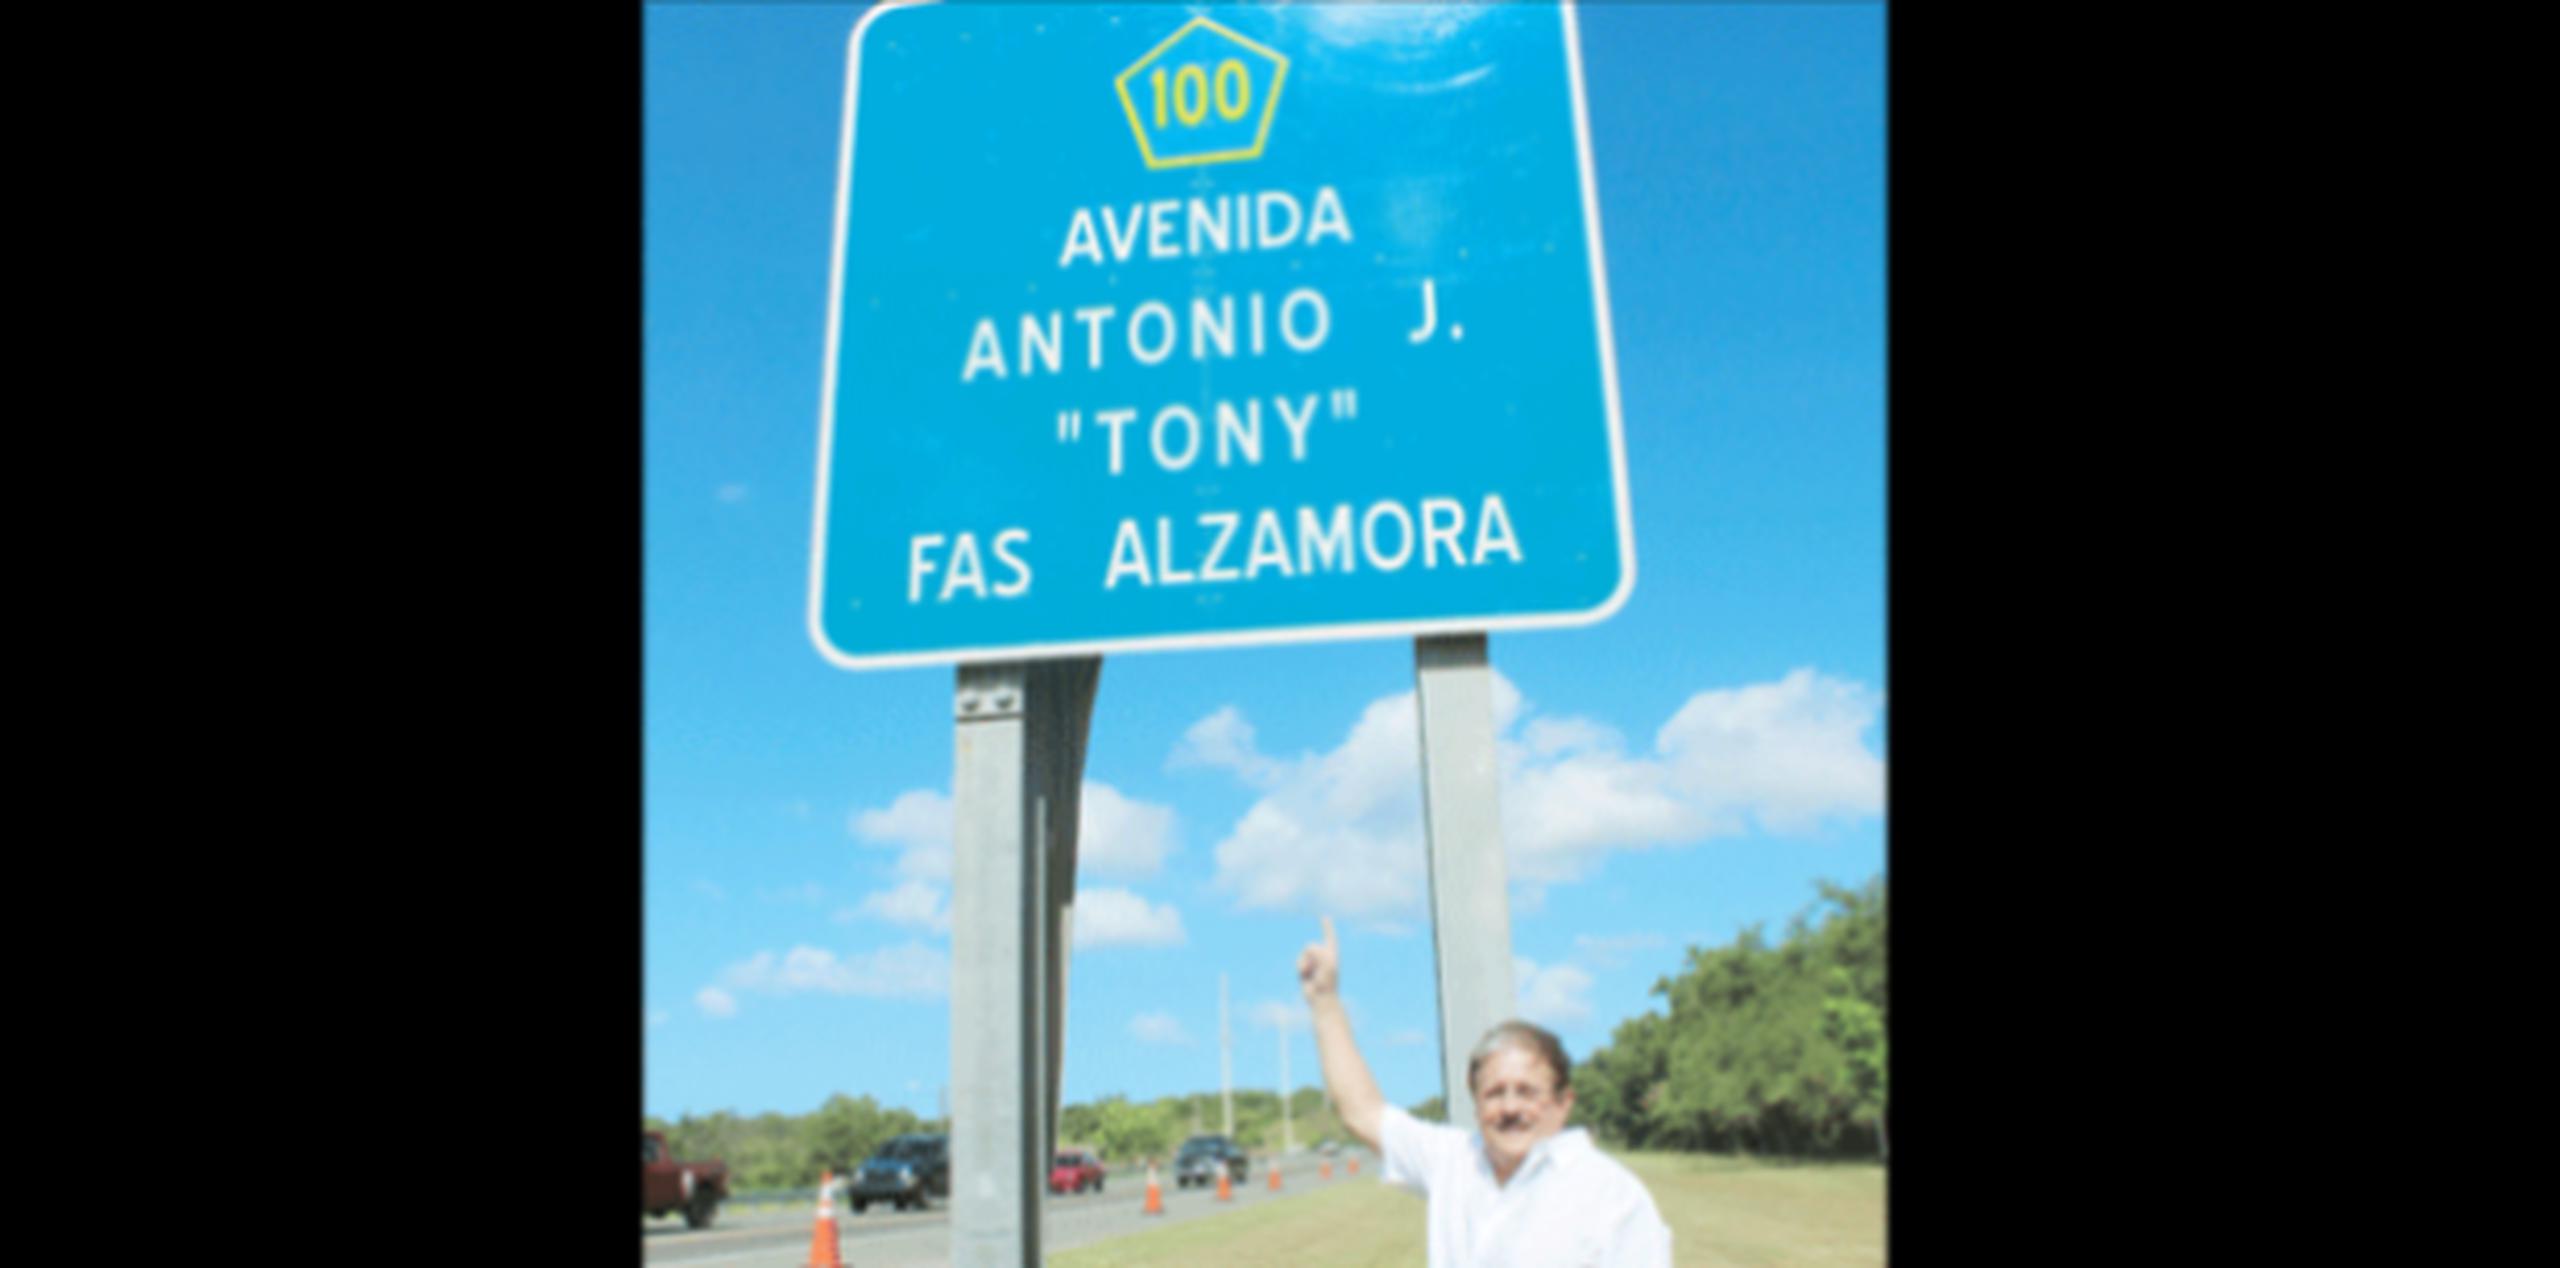 La vía lleva el nombre de Avenida Antonio J. “Tony” Fas Alzamora, en honor a los 40 años que este veterano caborrojeño sirvió como legislador. (Suministrada)